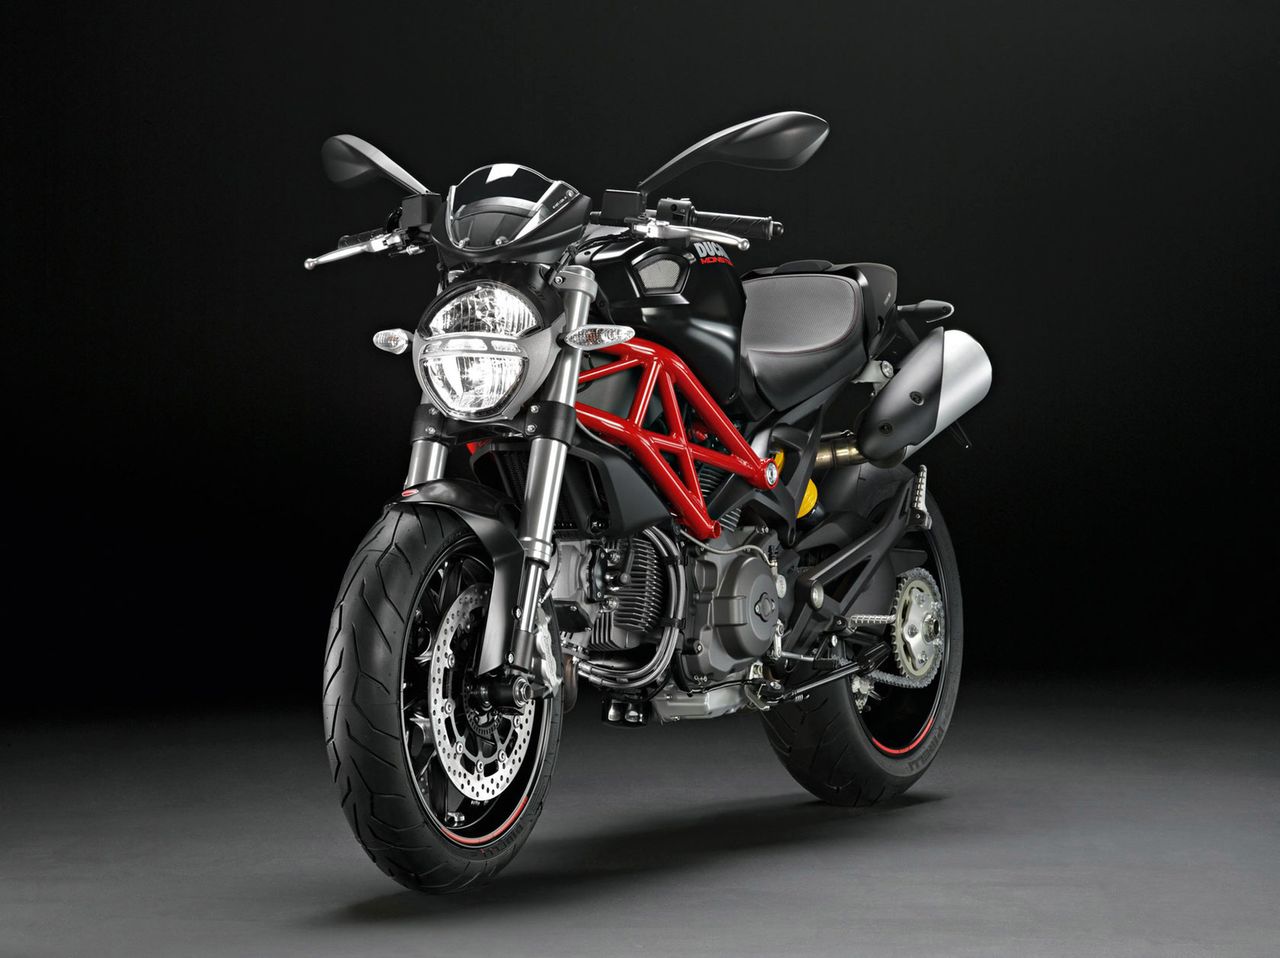 Motocykle Ducati wzywane do serwisu